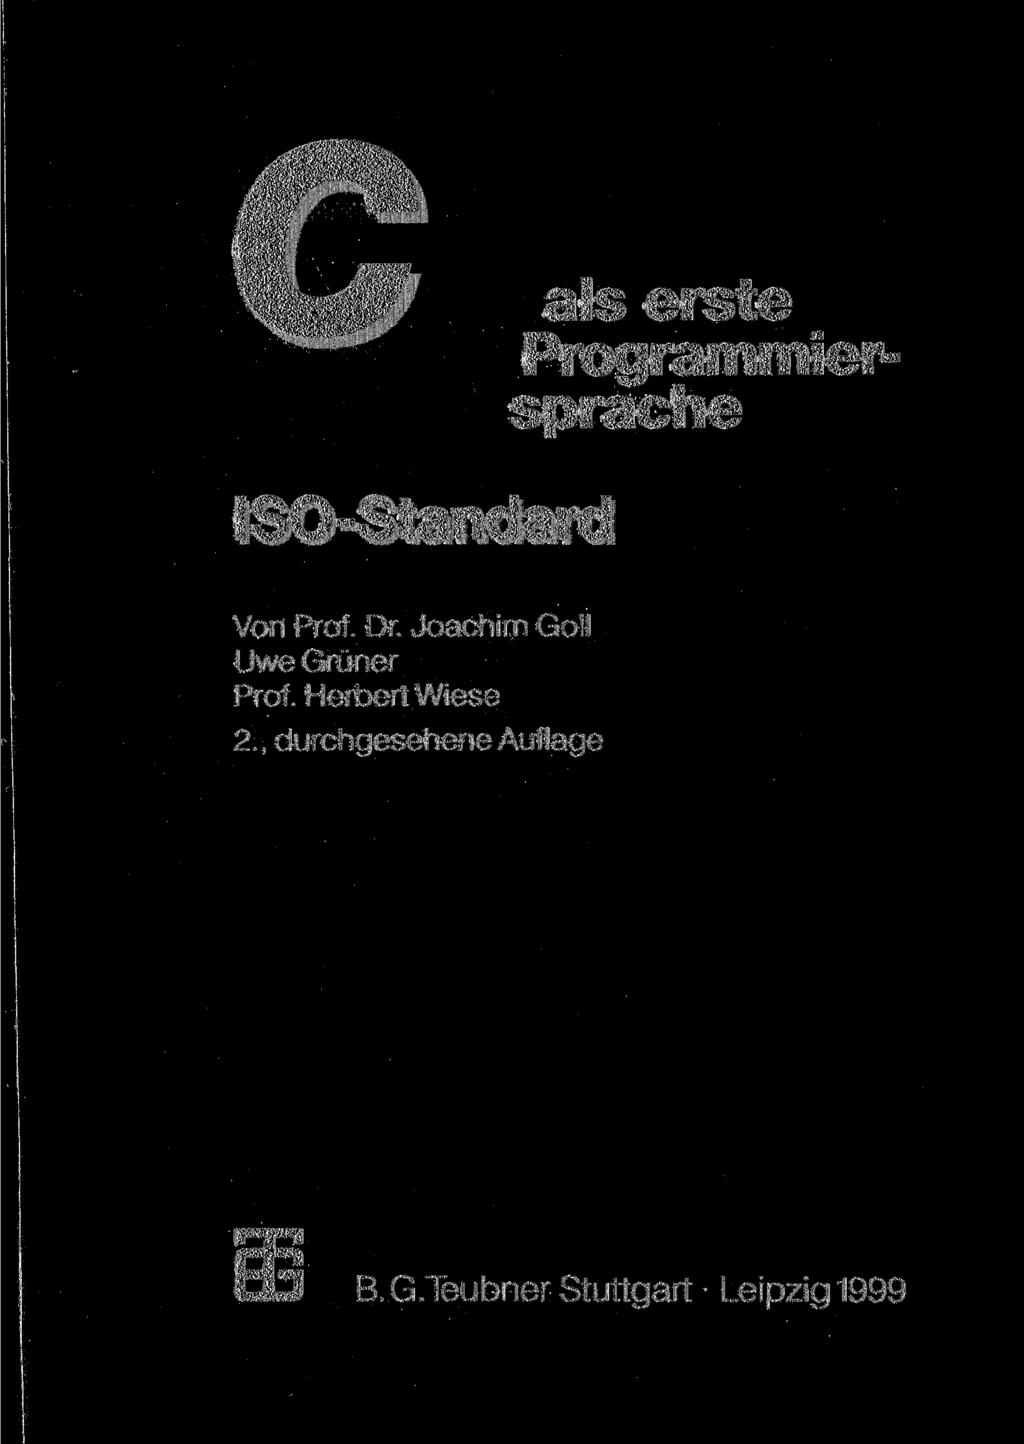 ISO-SiMMlarcl als erste Programmiersprache Von Prof. Dr.